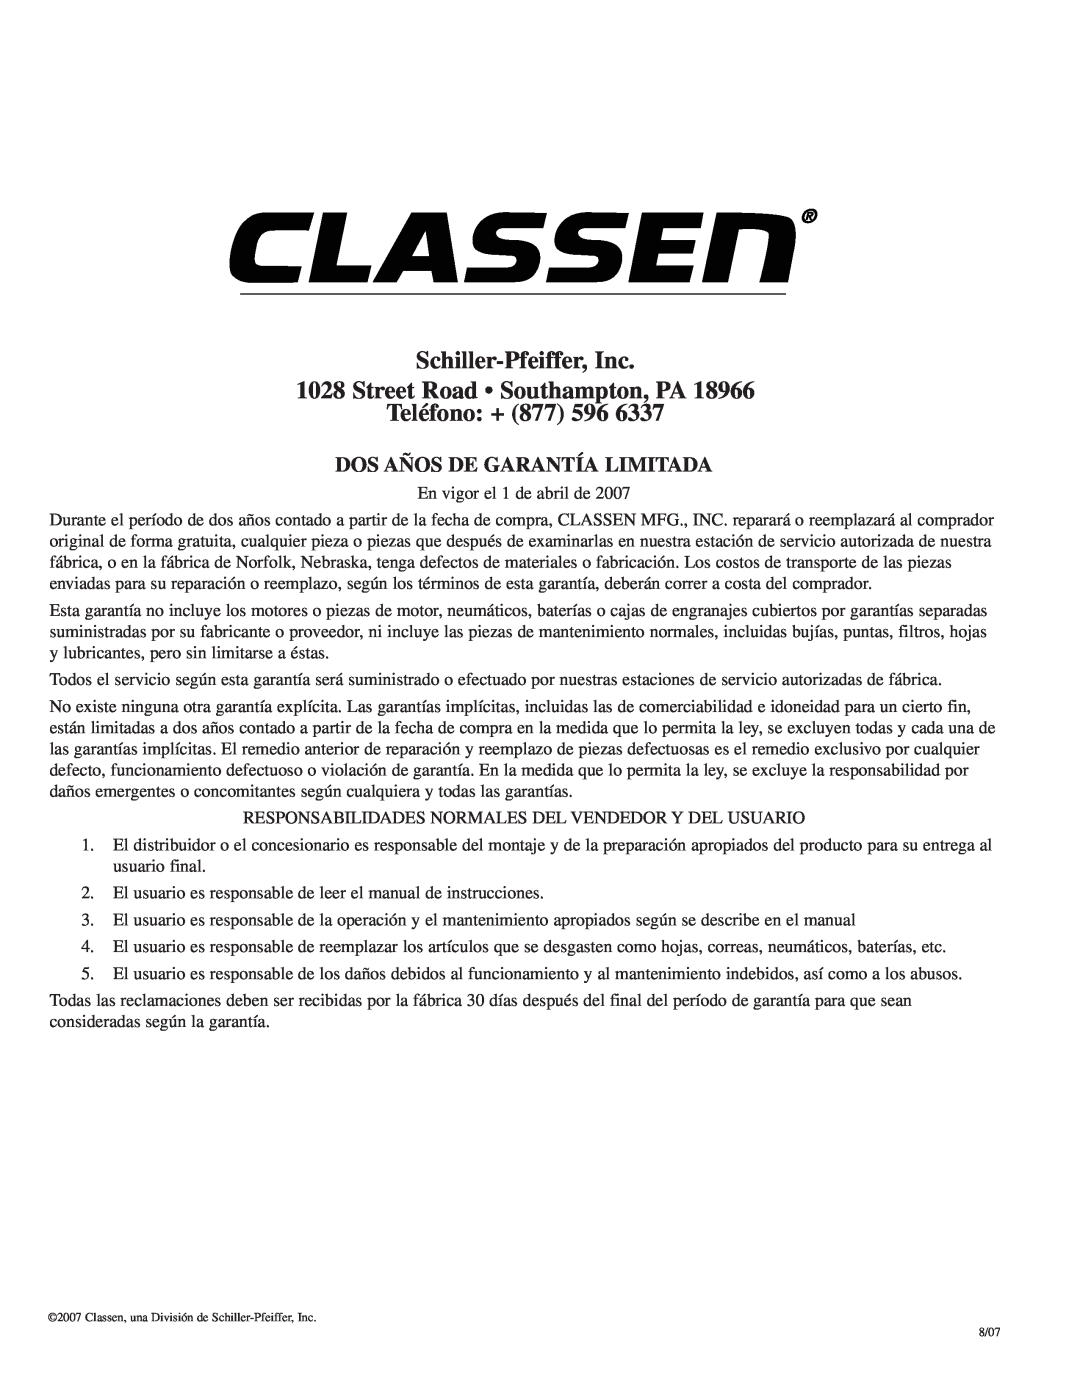 Classen SC-12/5.5 manual Schiller-Pfeiffer, Inc 1028 Street Road Southampton, PA, Teléfono +, Dos Años De Garantía Limitada 